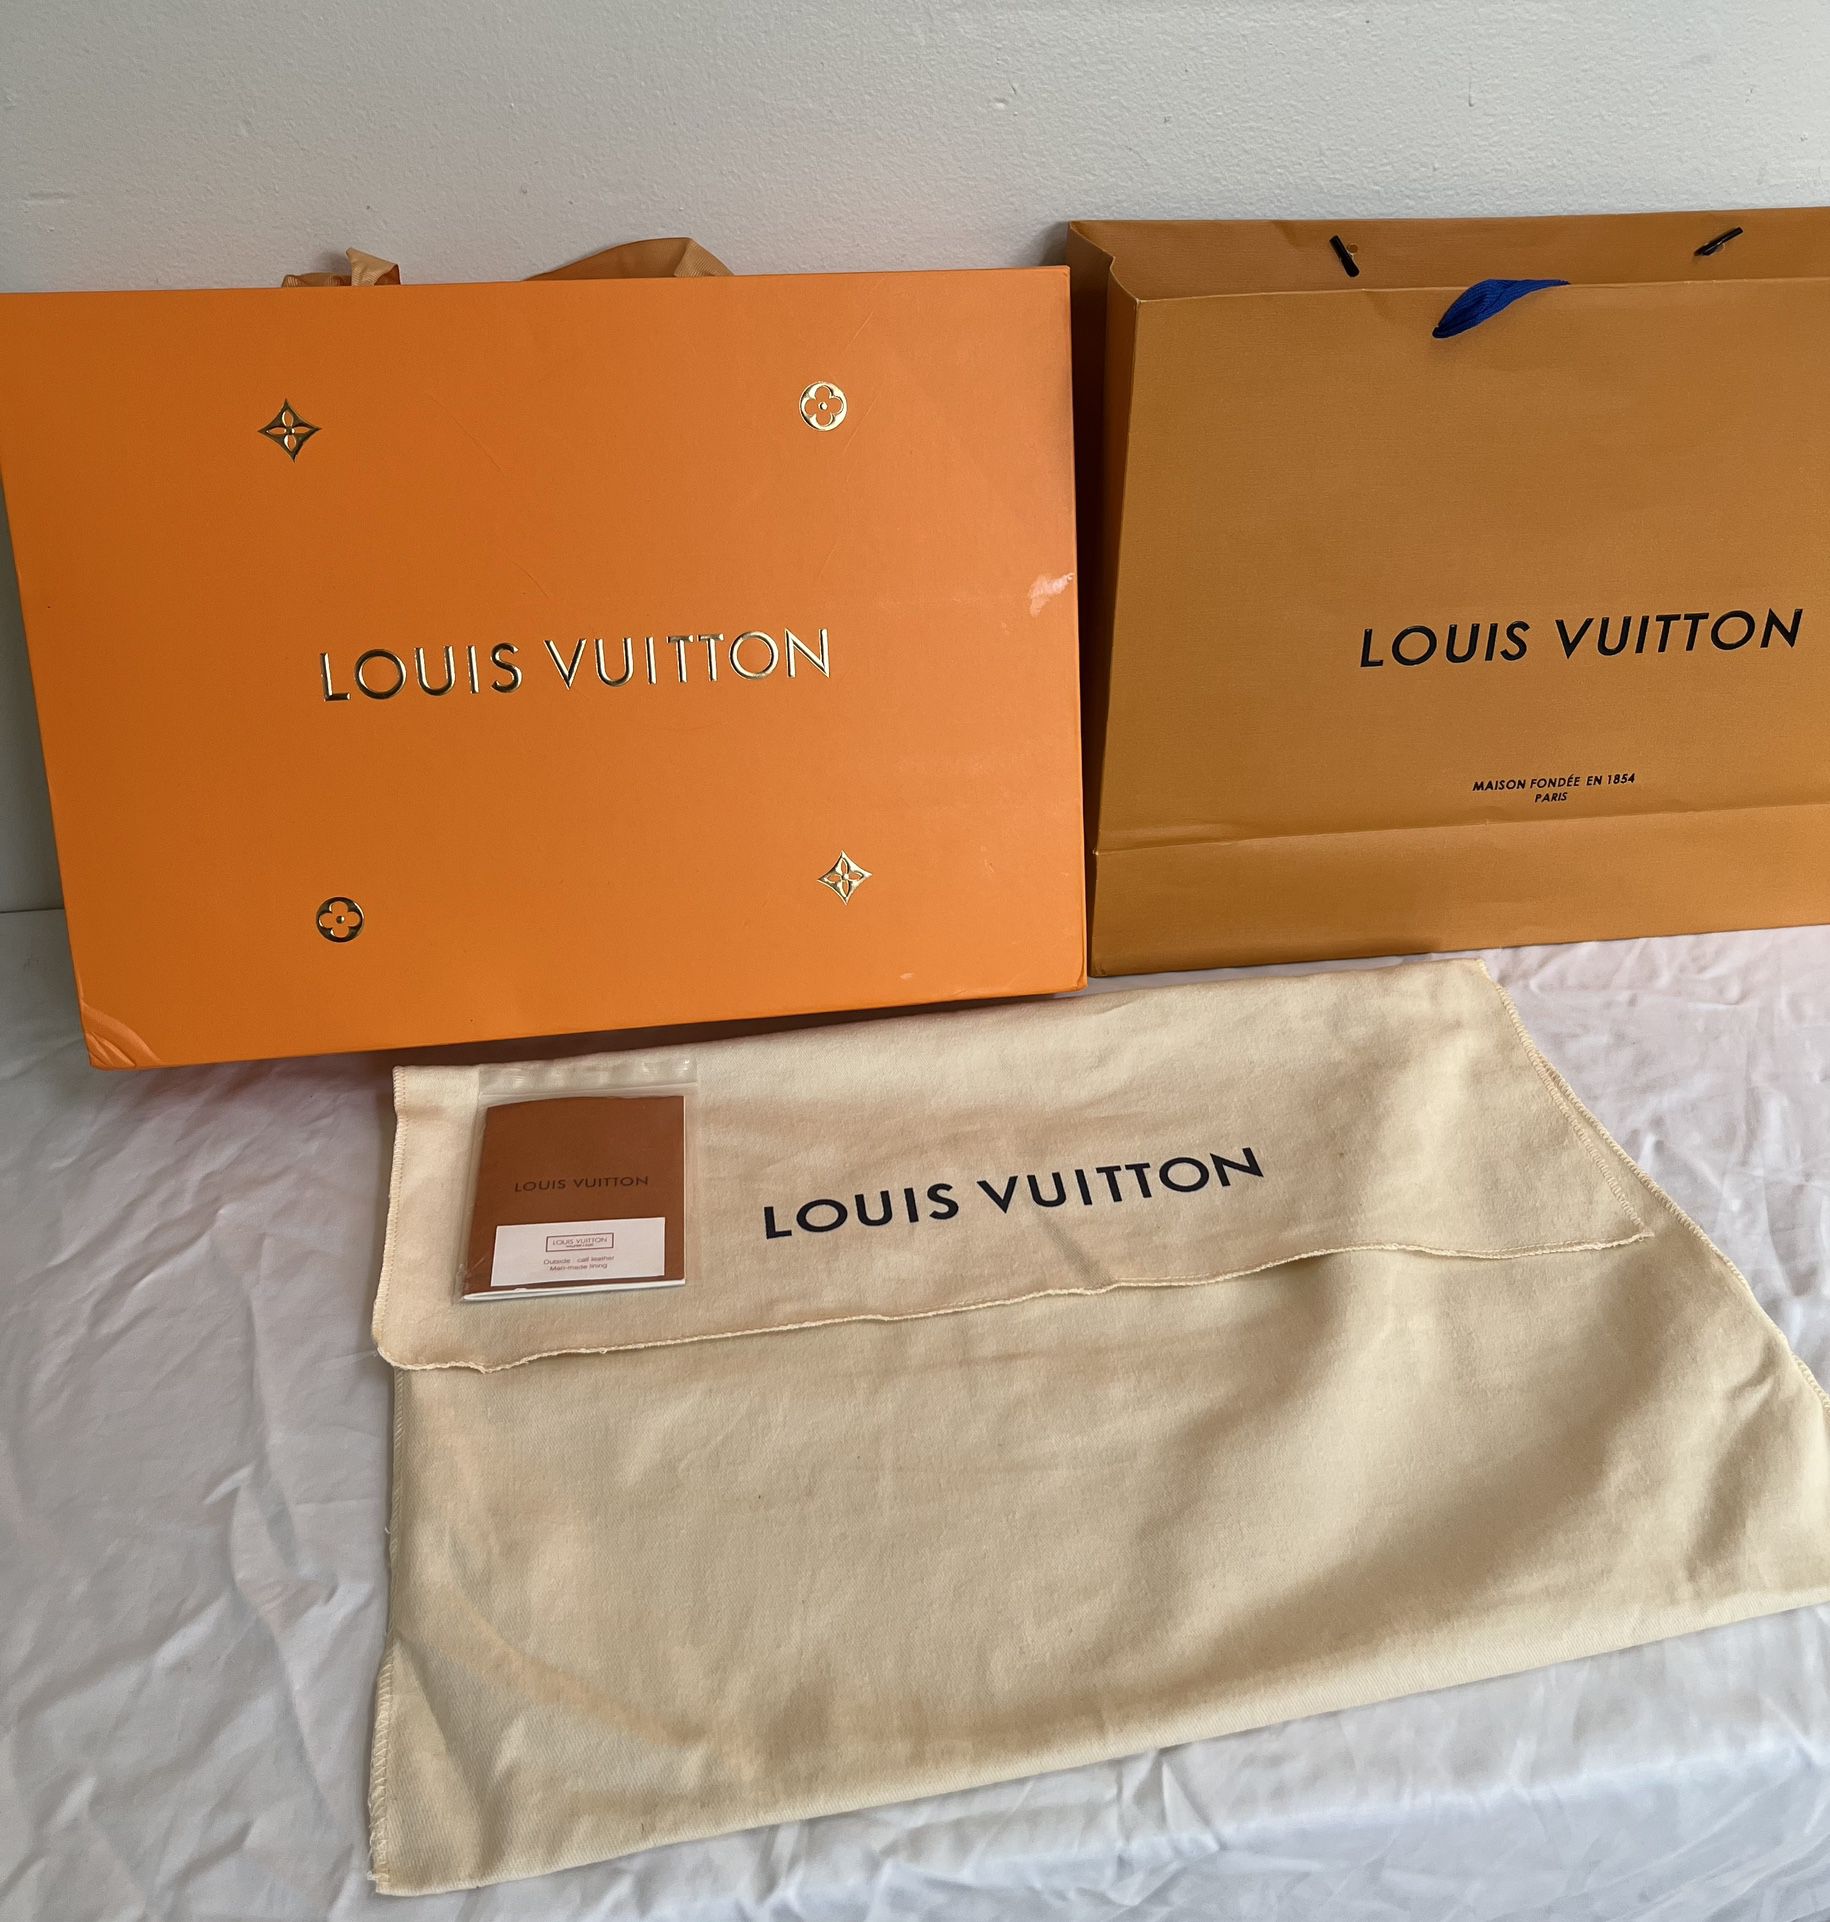 REDUCED* Louis Vuitton Rivoli MM in Damier Ebene for Sale in Dearborn, MI -  OfferUp